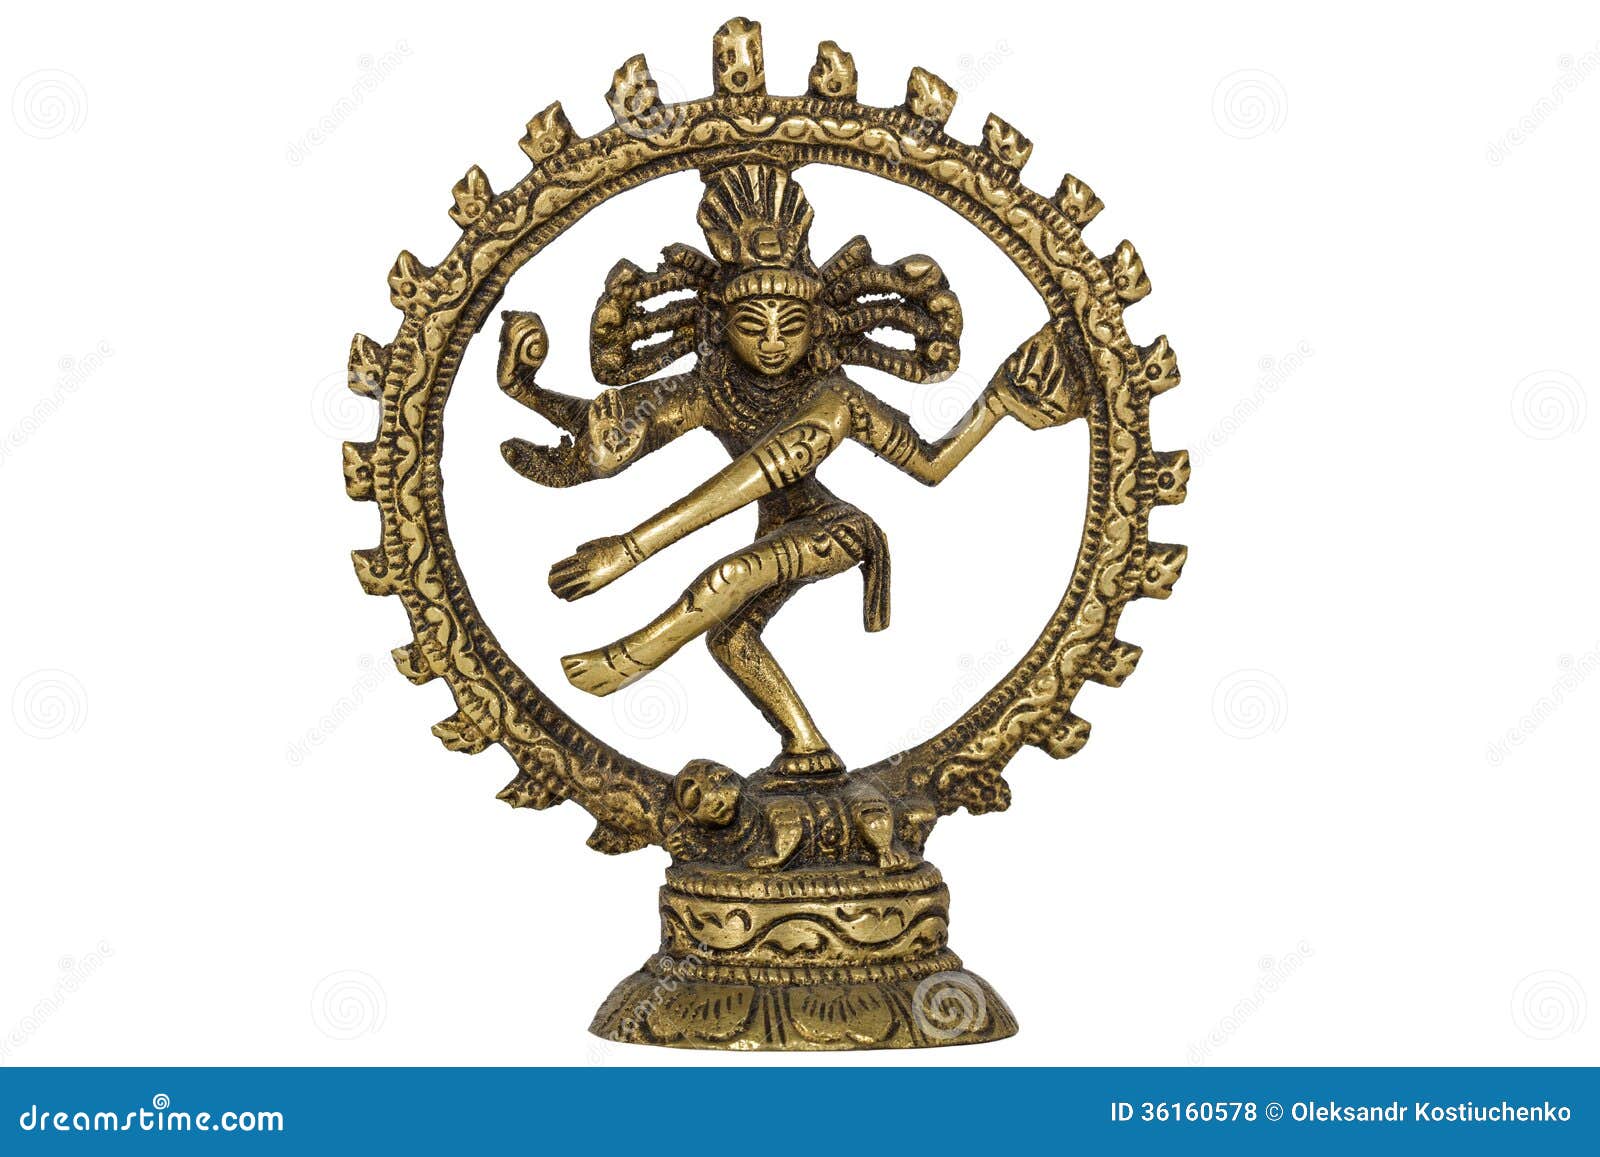 Shiva Nataraja, Isolated on White Background Stock Photo - Image ...